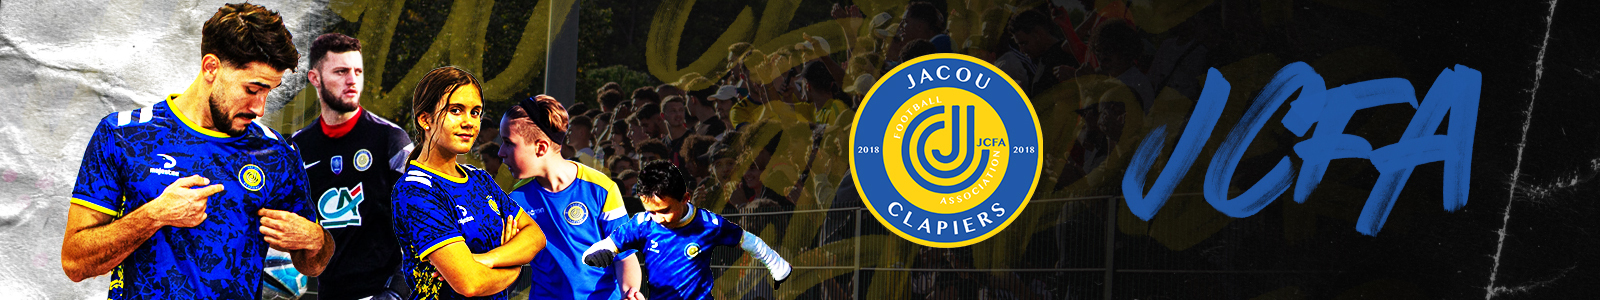 JACOU CLAPIERS FOOTBALL ASSOCIATION : site officiel du club de foot de CLAPIERS - footeo